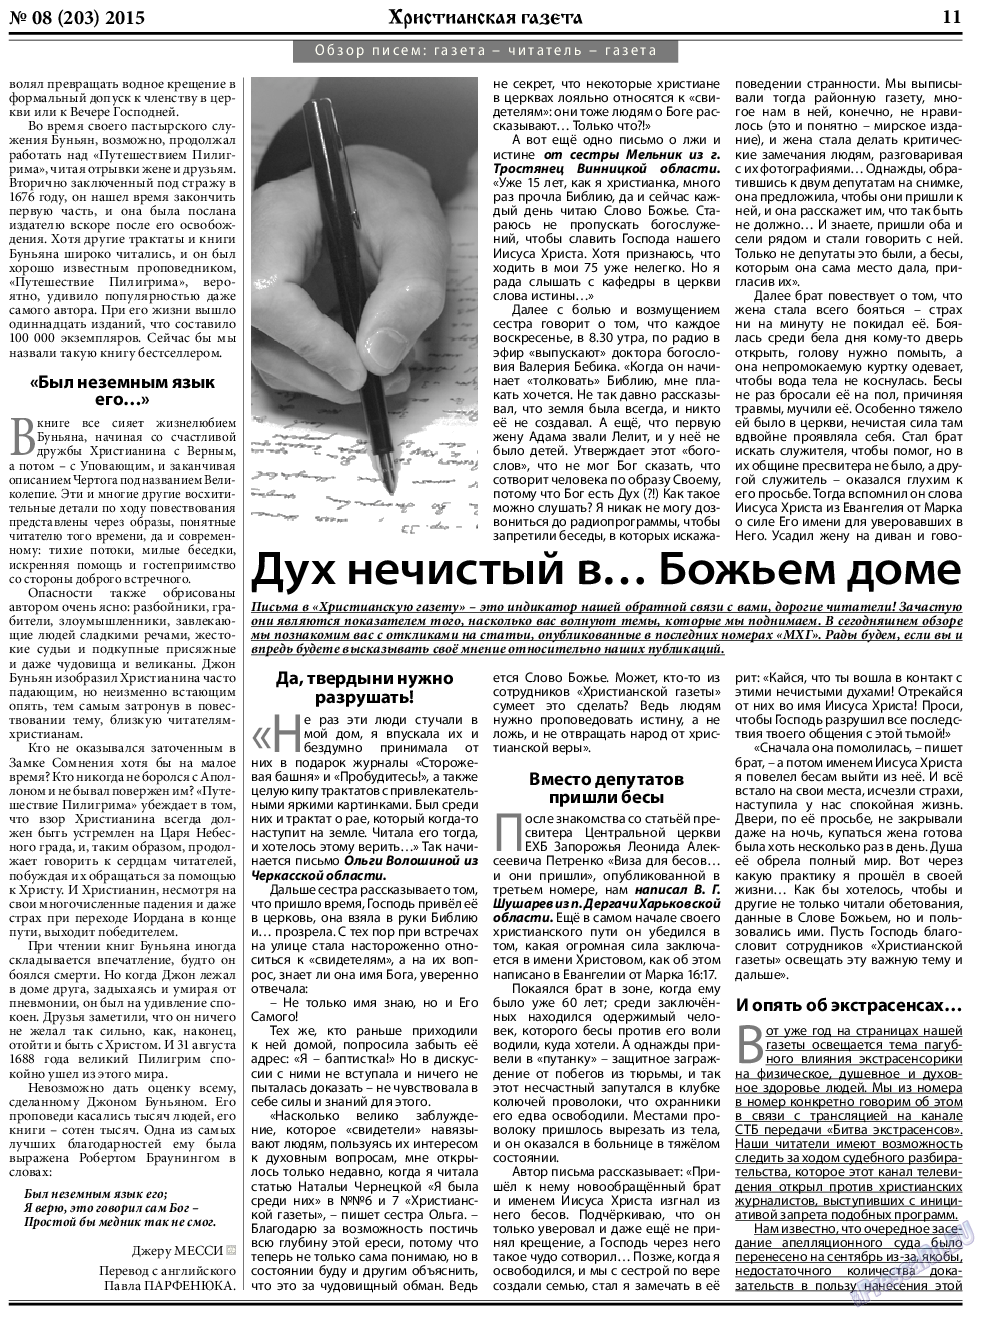 Христианская газета, газета. 2015 №8 стр.11